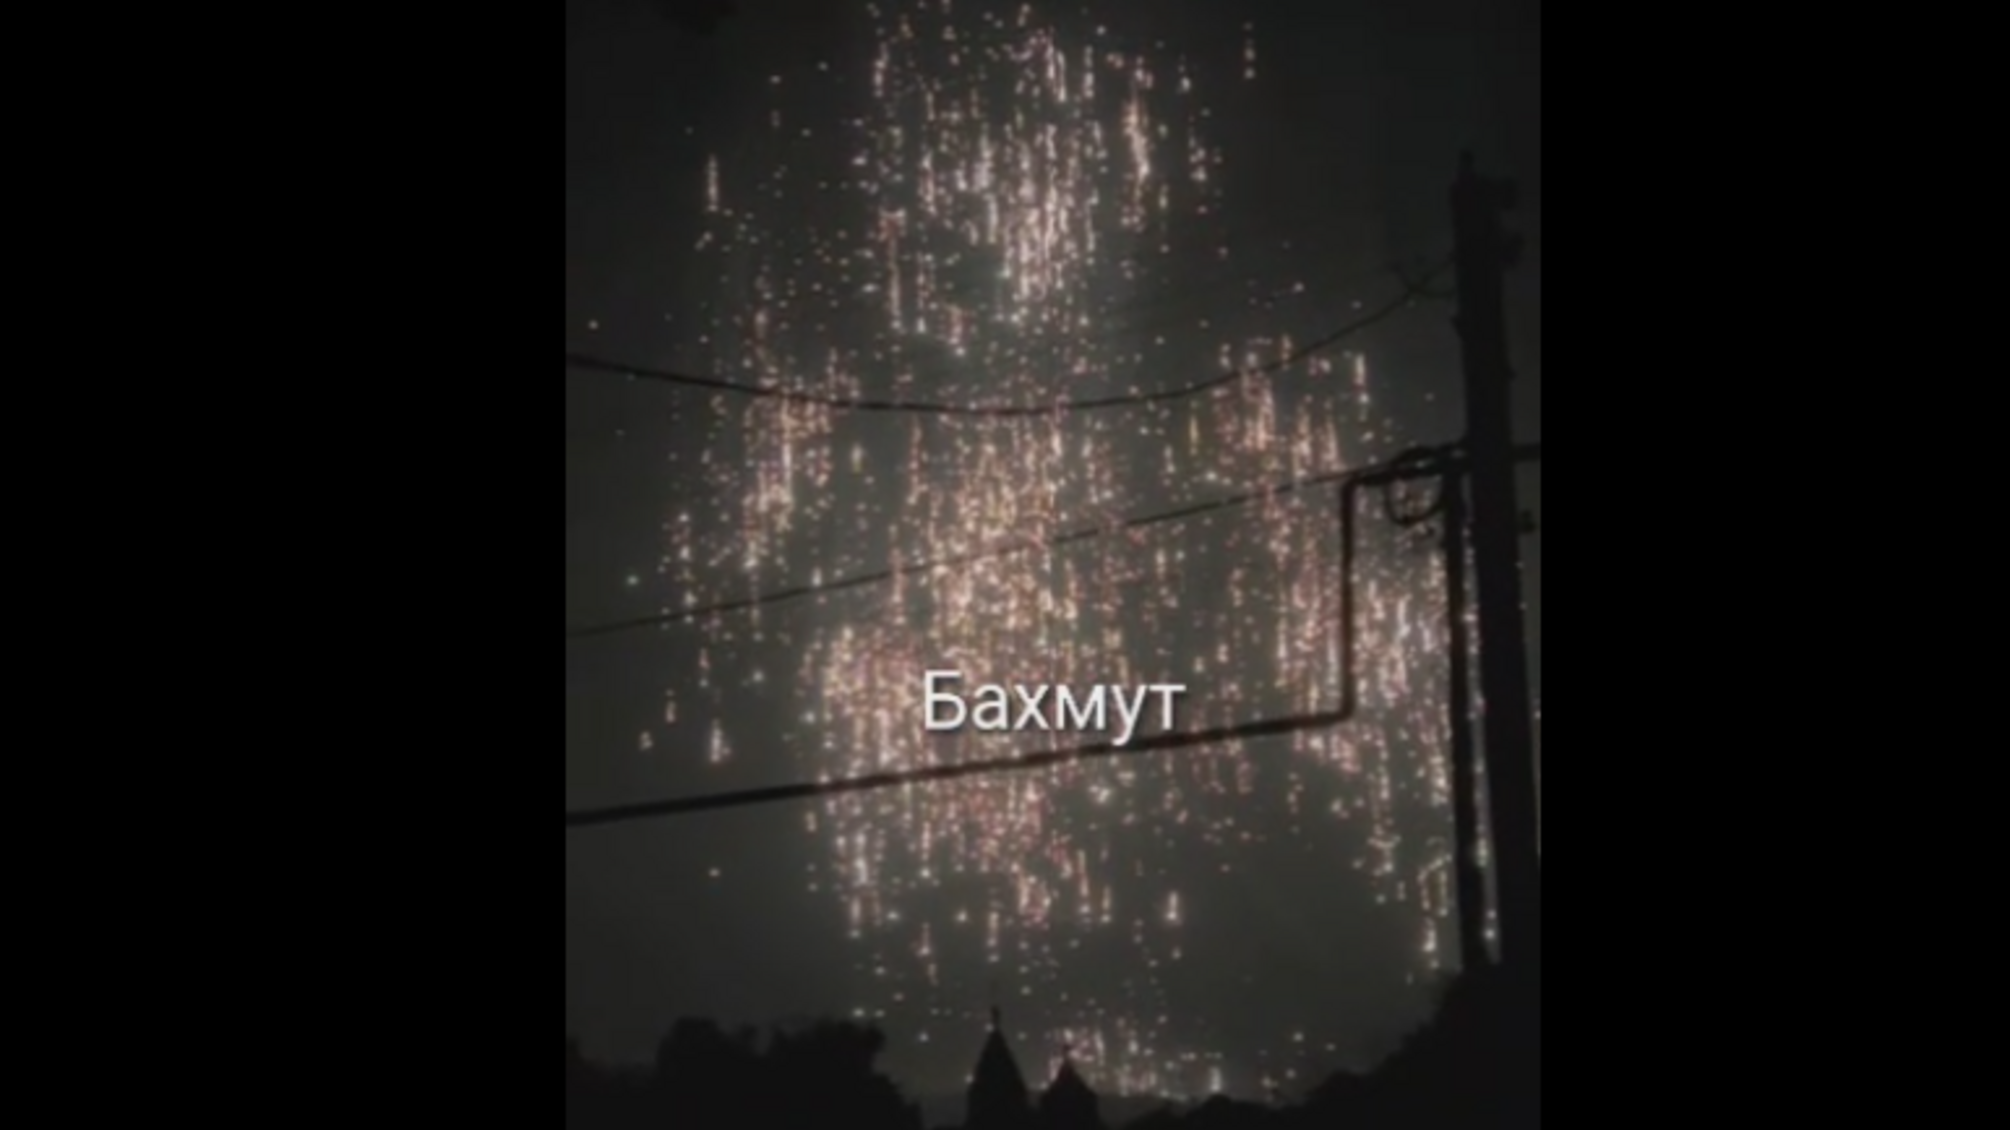 Небо в огне: обнародованы кадры фосфорного удара по Бахмуту (видео)